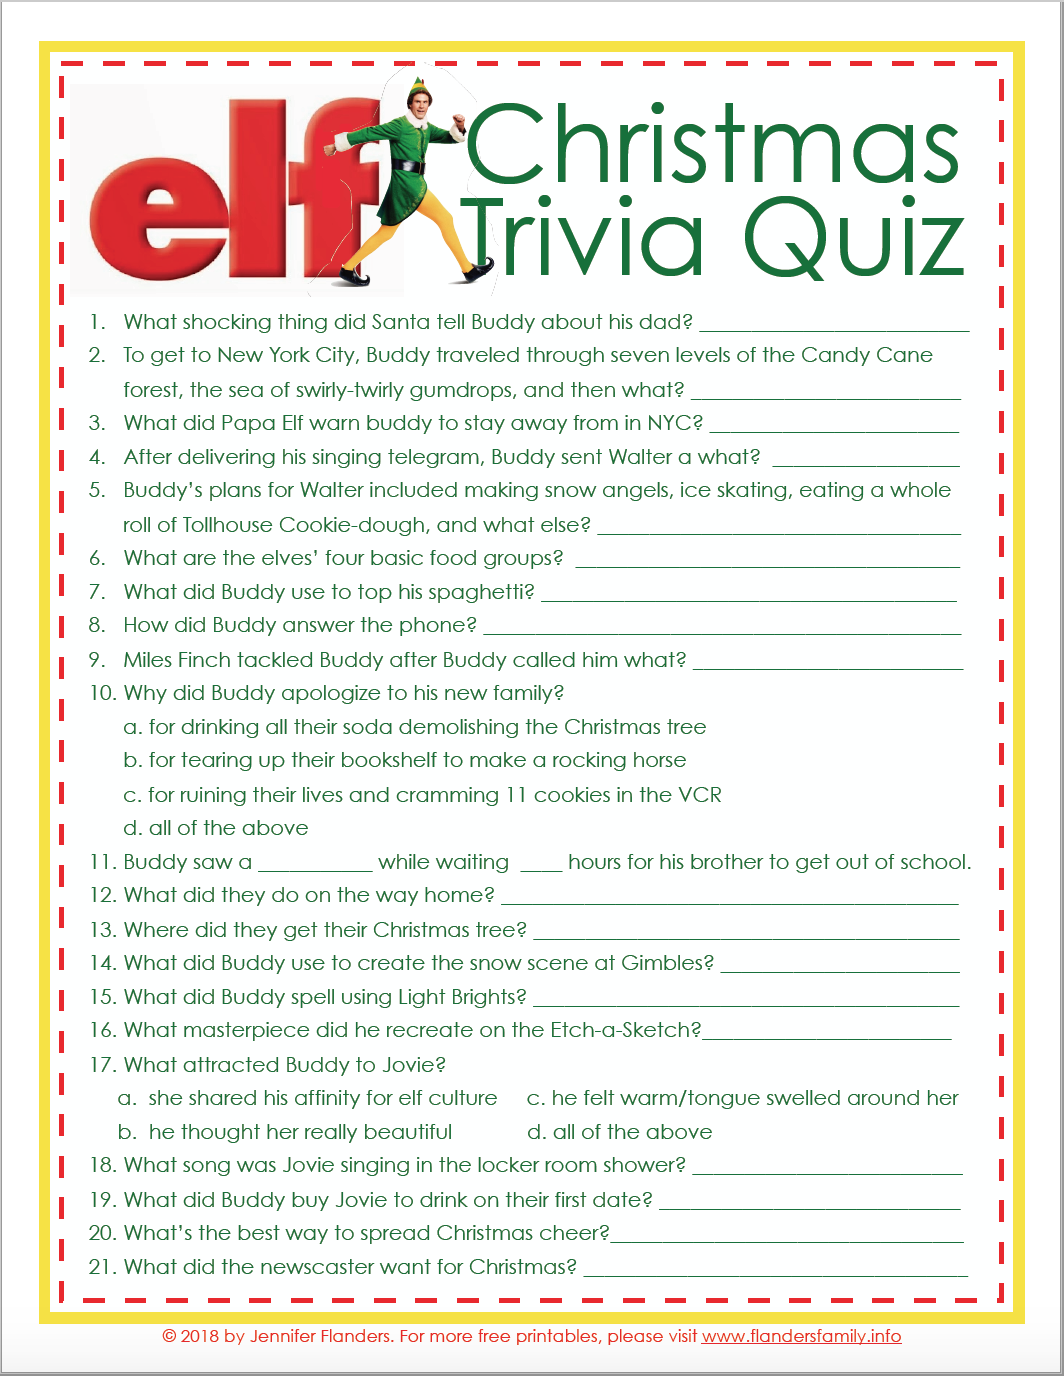 Elf Christmas Trivia Game (Free Printable) Flanders Family Homelife